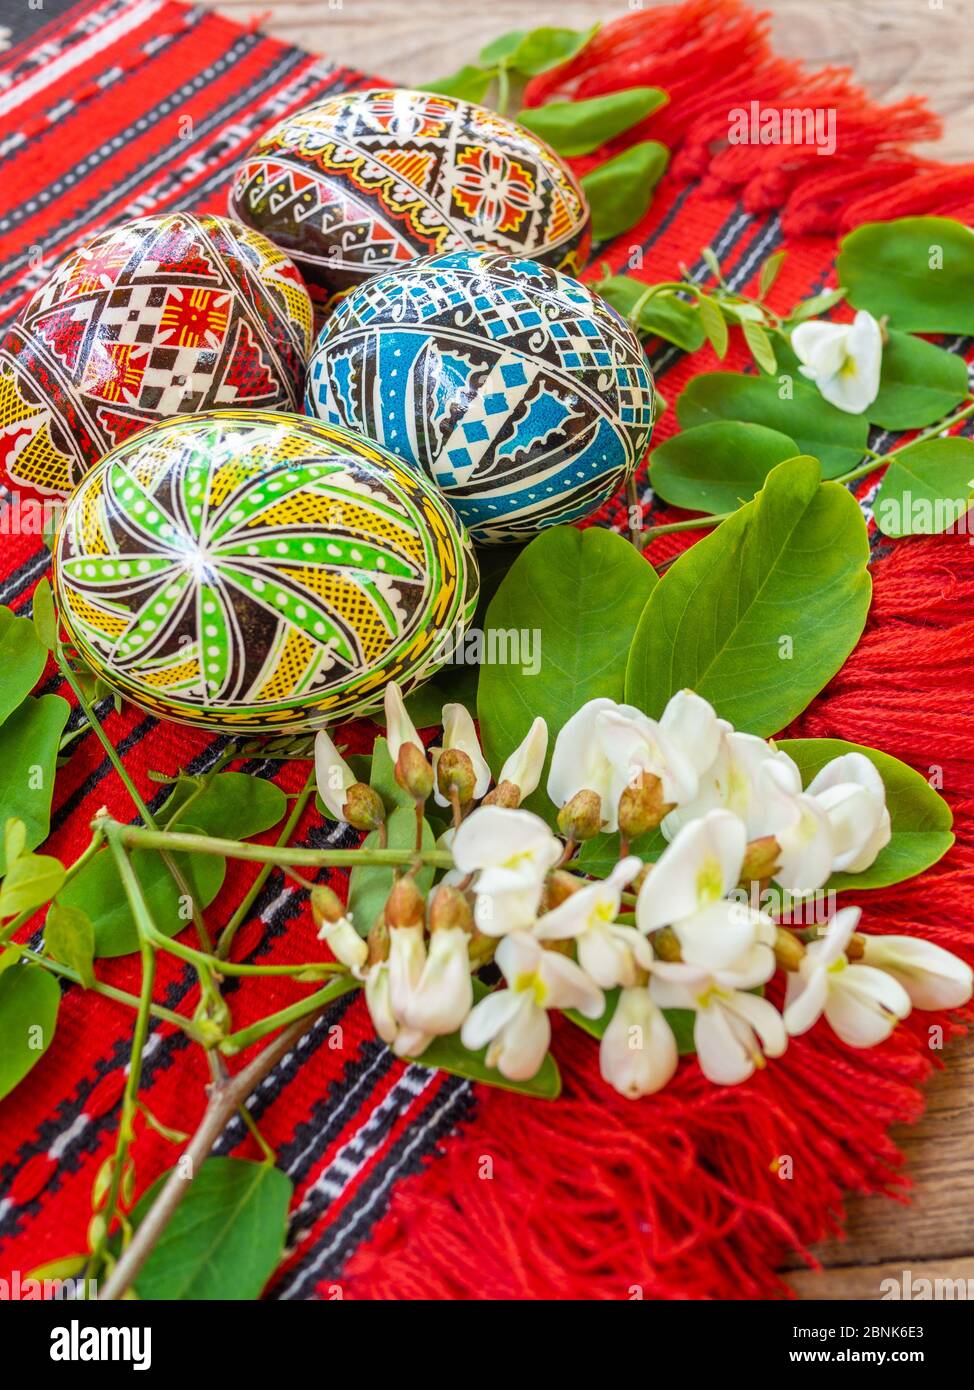 uova di pasqua rumene ortodosse decorate a mano con motivi tradizionali su un panno rosso con fiori di acacia da parte Foto Stock